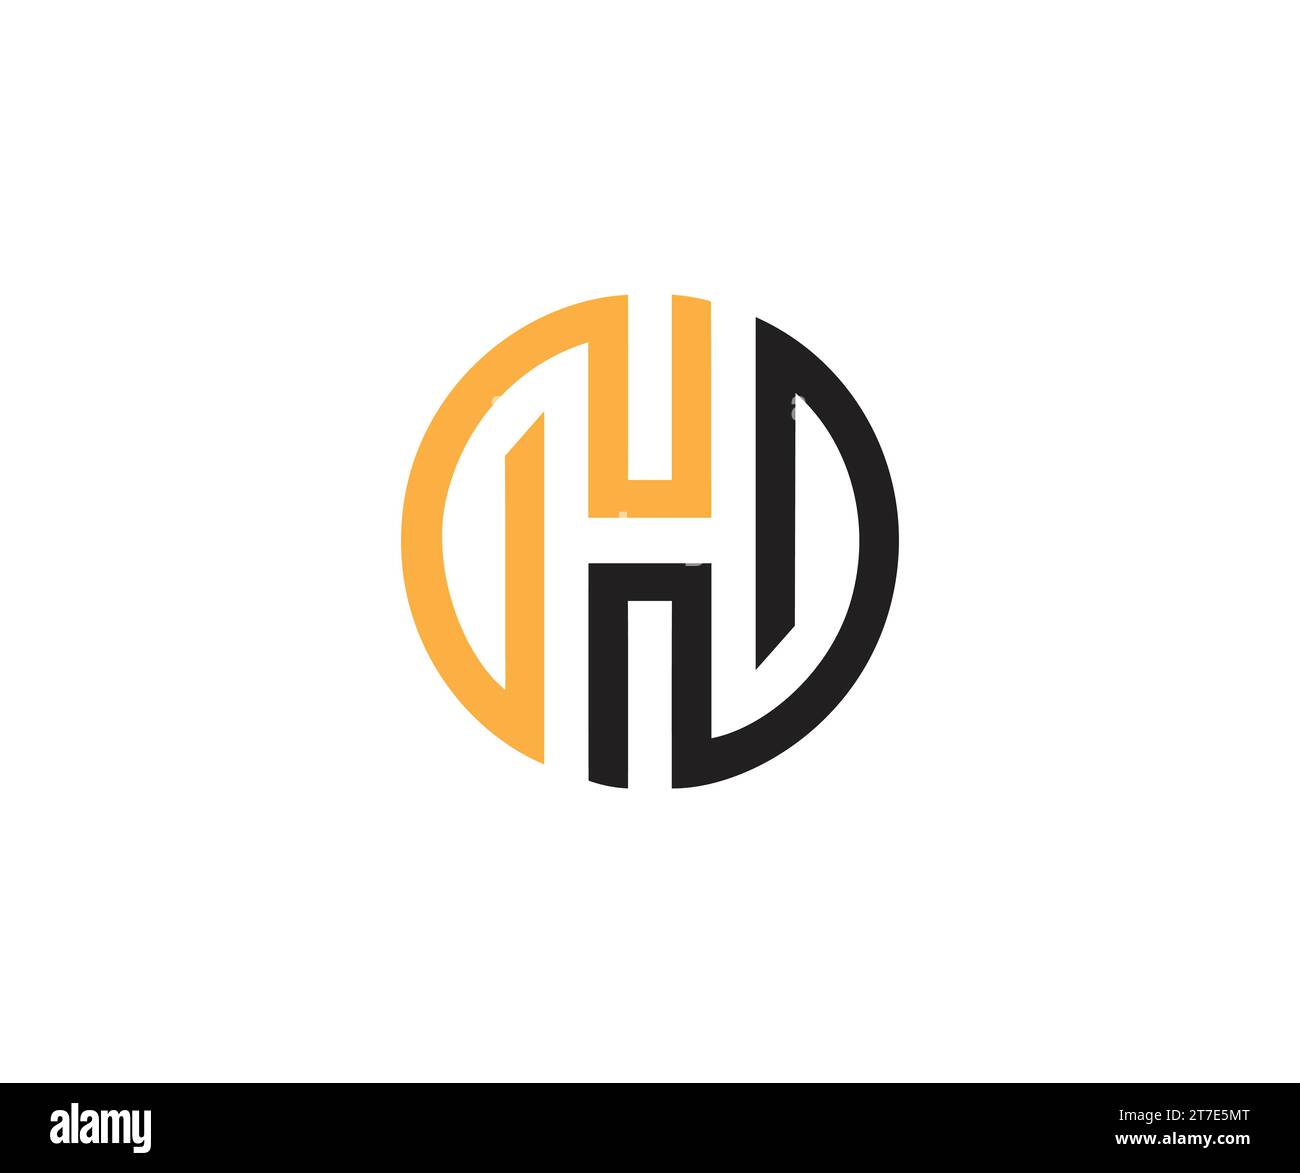 HH logo, h logo design vector Stock Vector